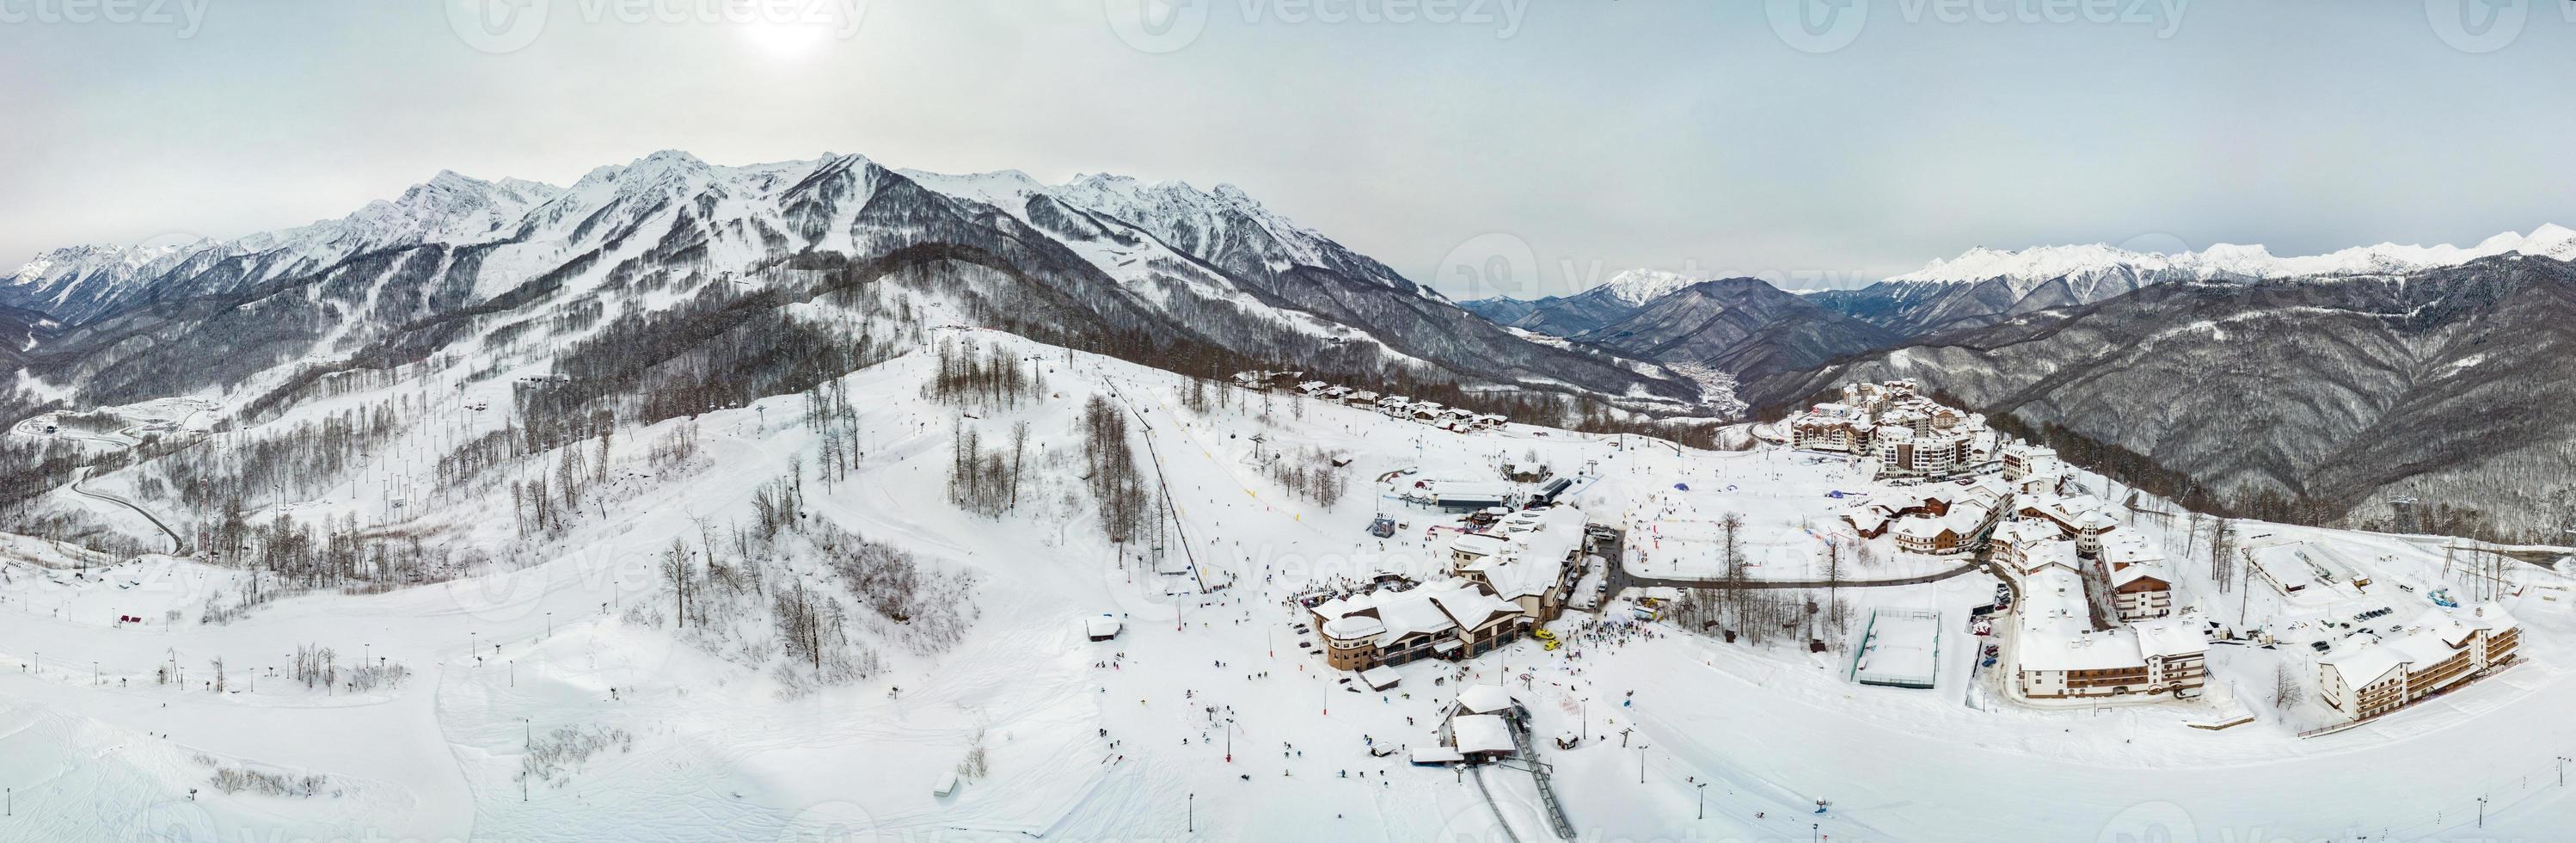 vue aérienne de la station de ski de rosa khutor, montagnes couvertes de neige à krasnaya polyana, russie. photo